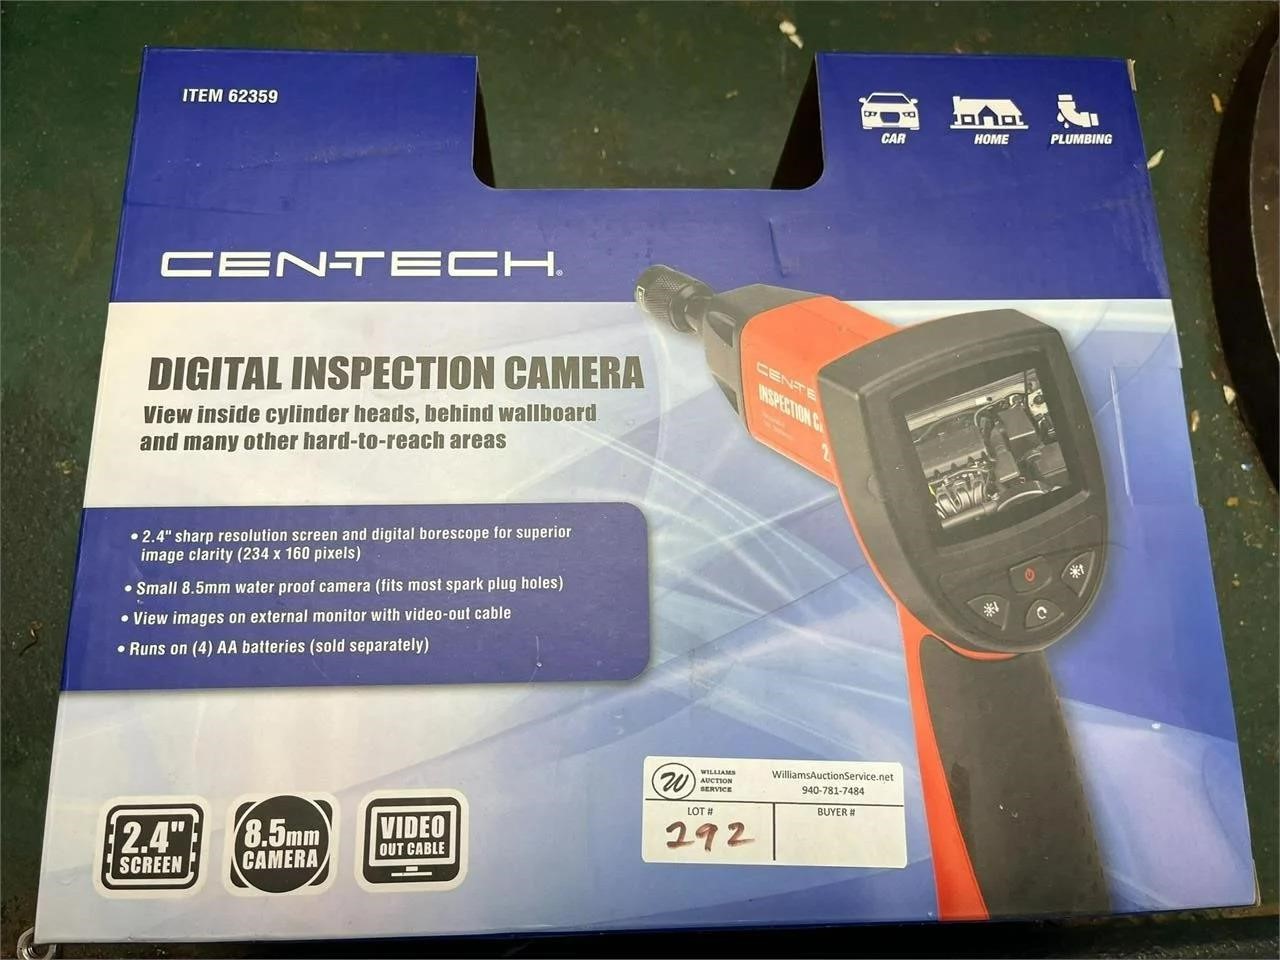 NIB Digital Inspection Camera